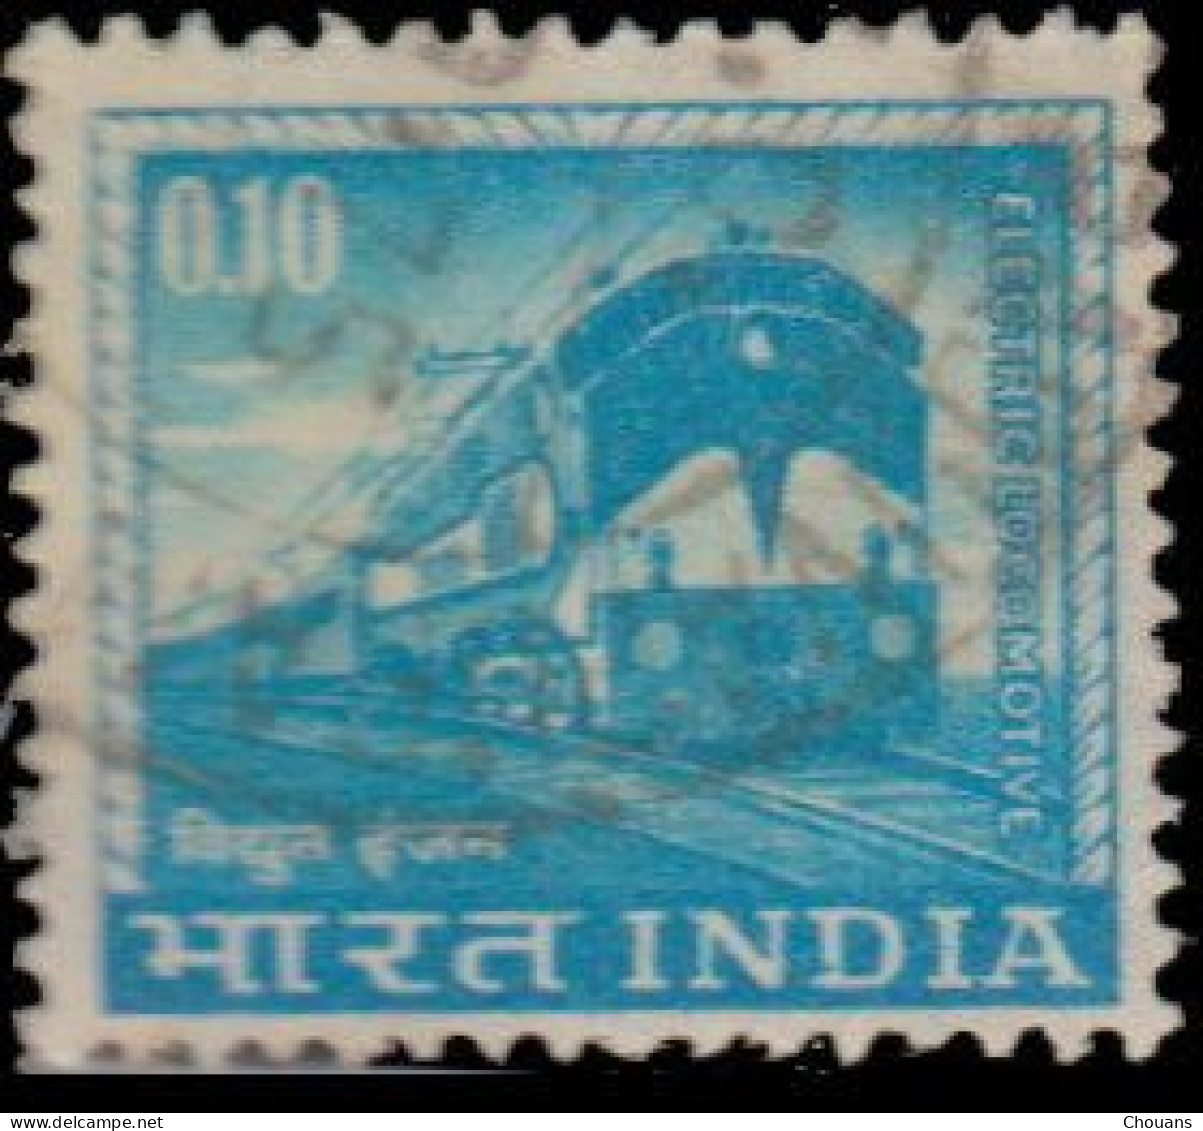 Inde 1965. ~ YT 192 (par 6) - Locomotive électrique - Unused Stamps